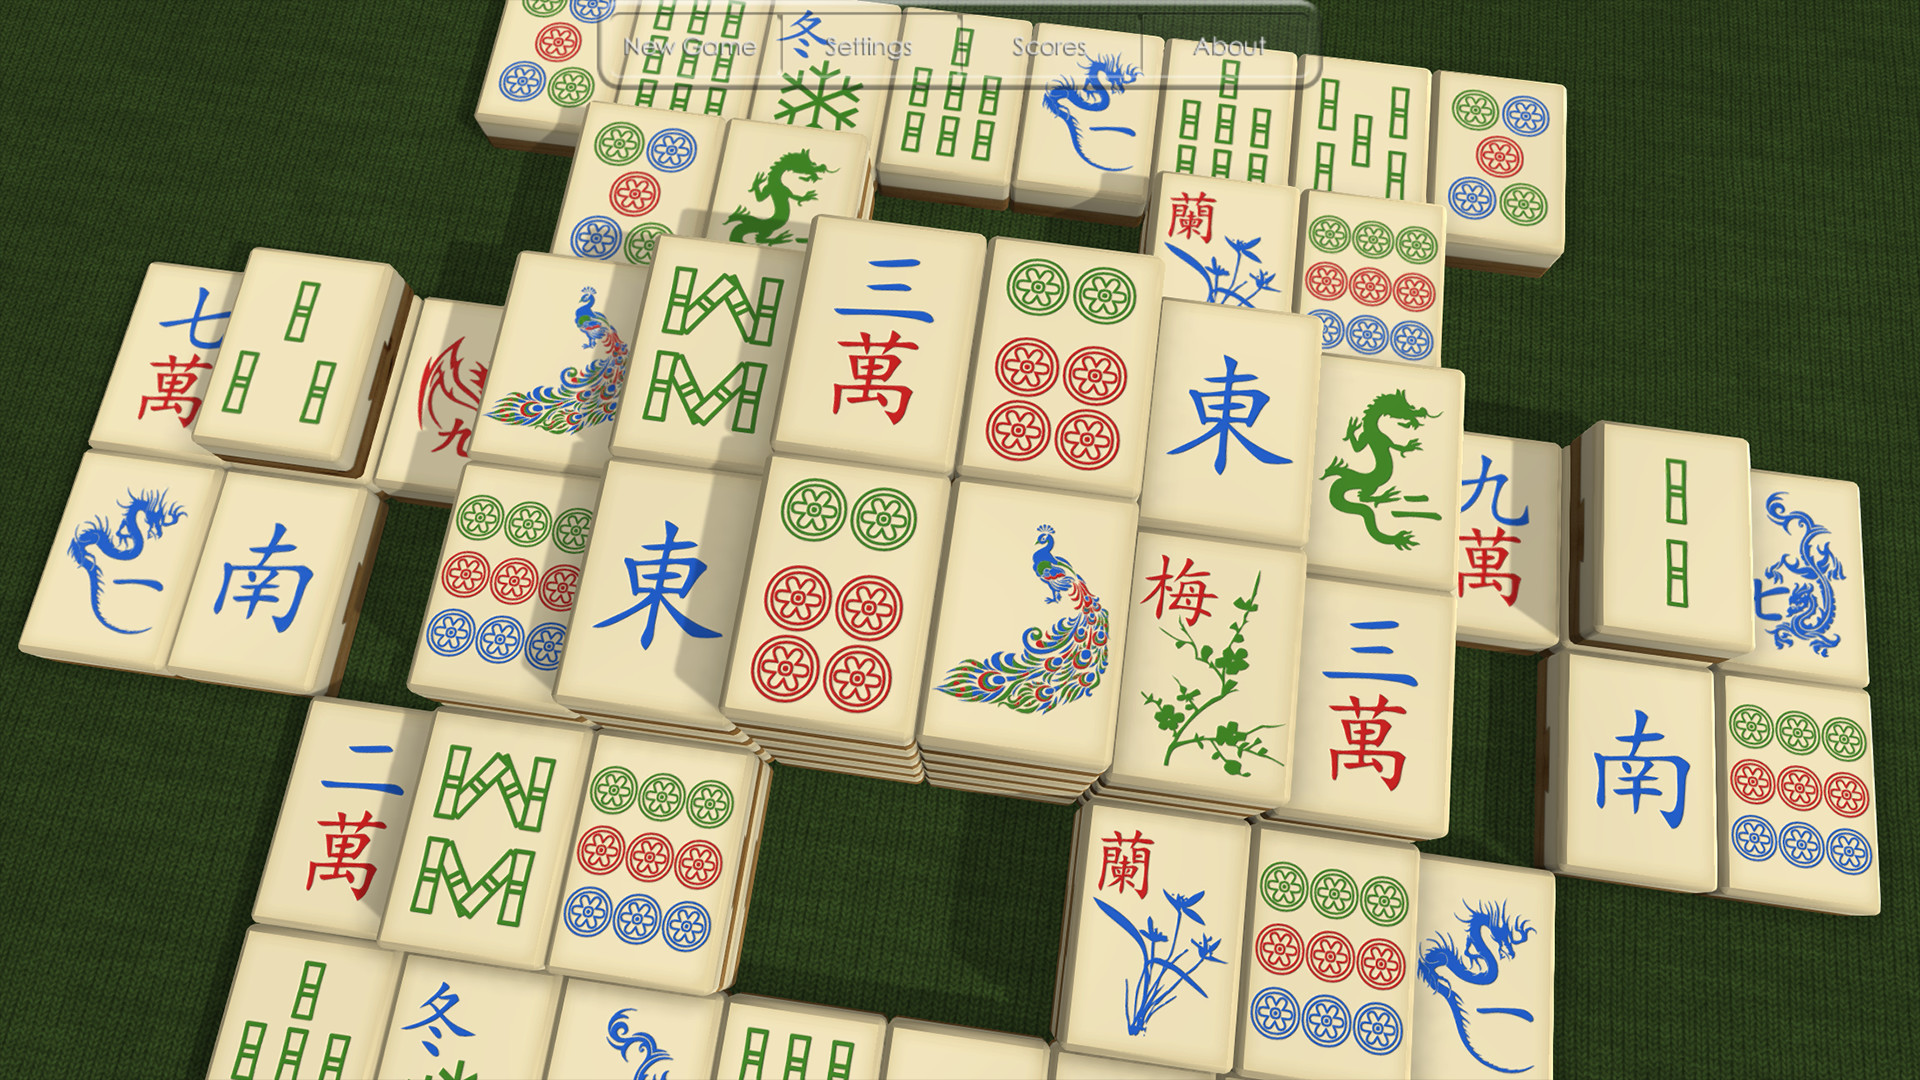 китайские карты играть бесплатно онлайн